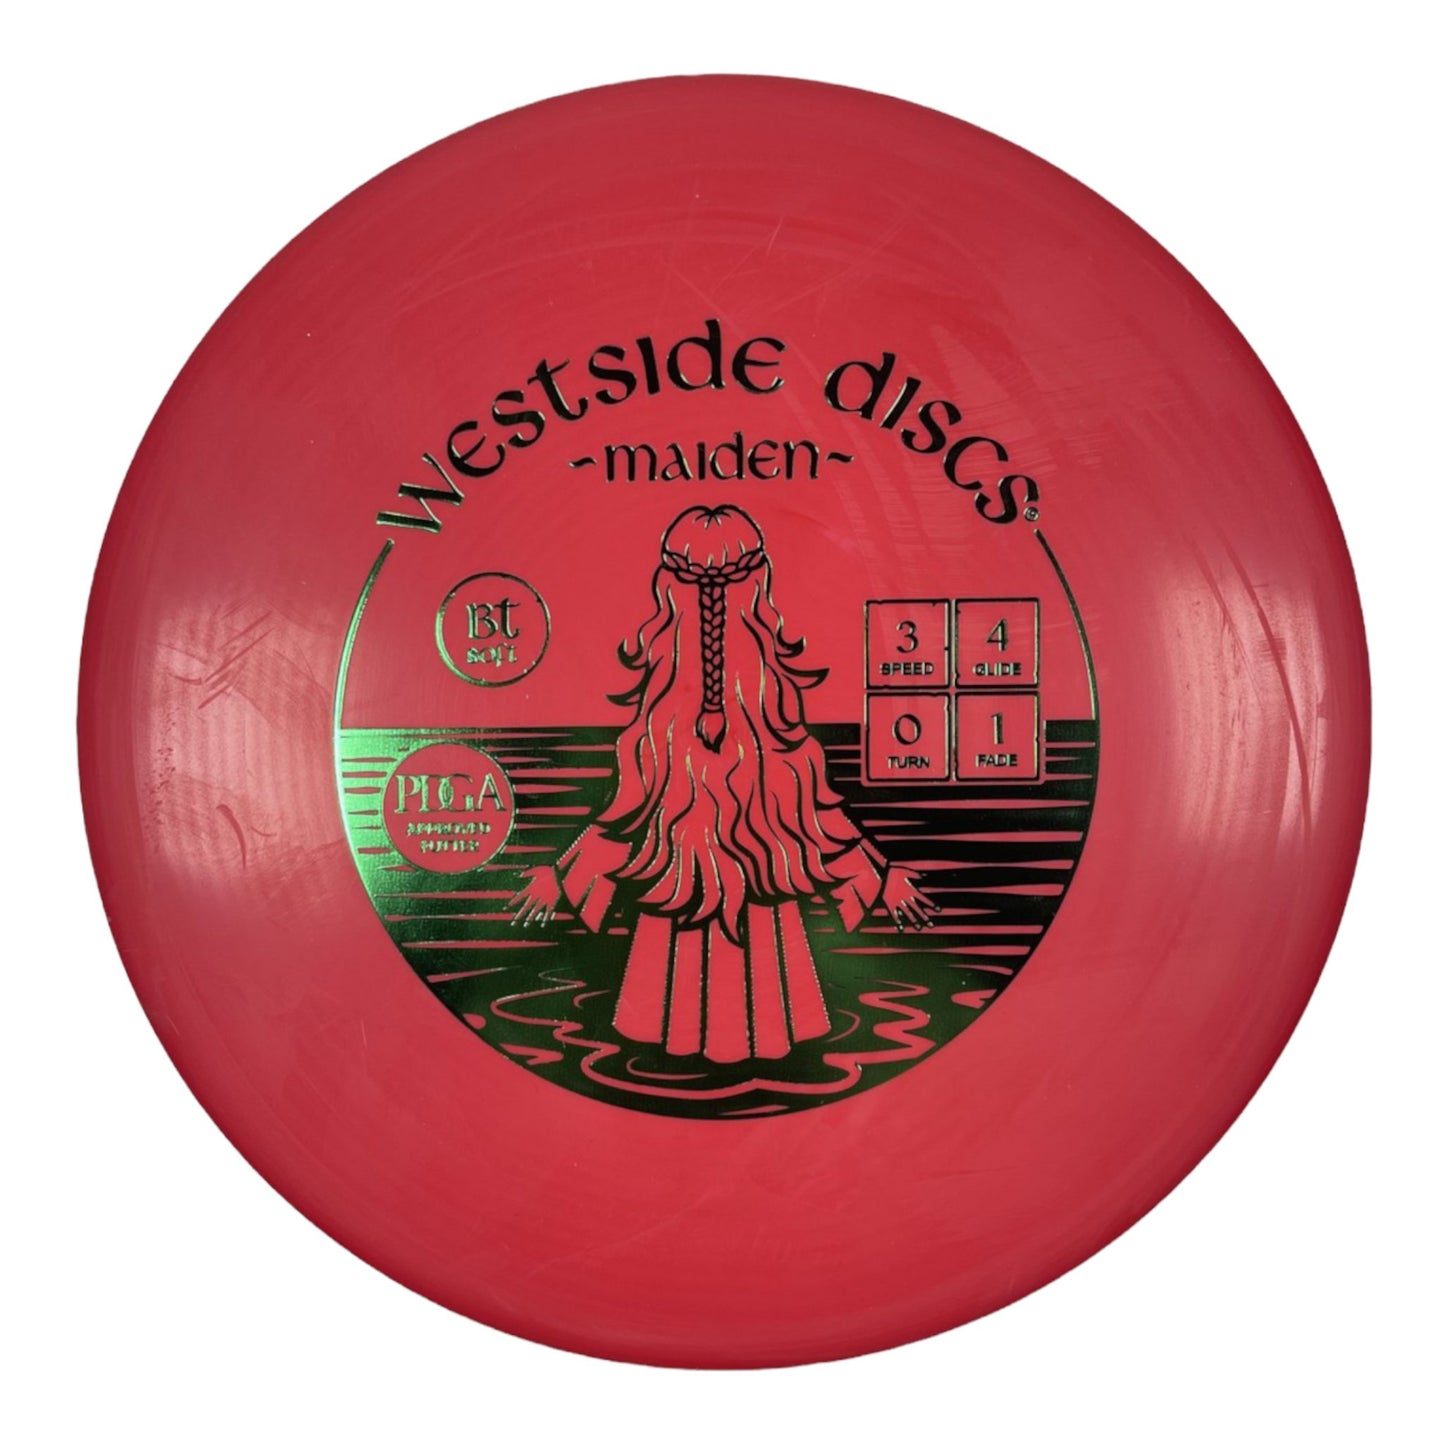 Westside Discs Maiden | BT Soft | Red/Green Disc Golf